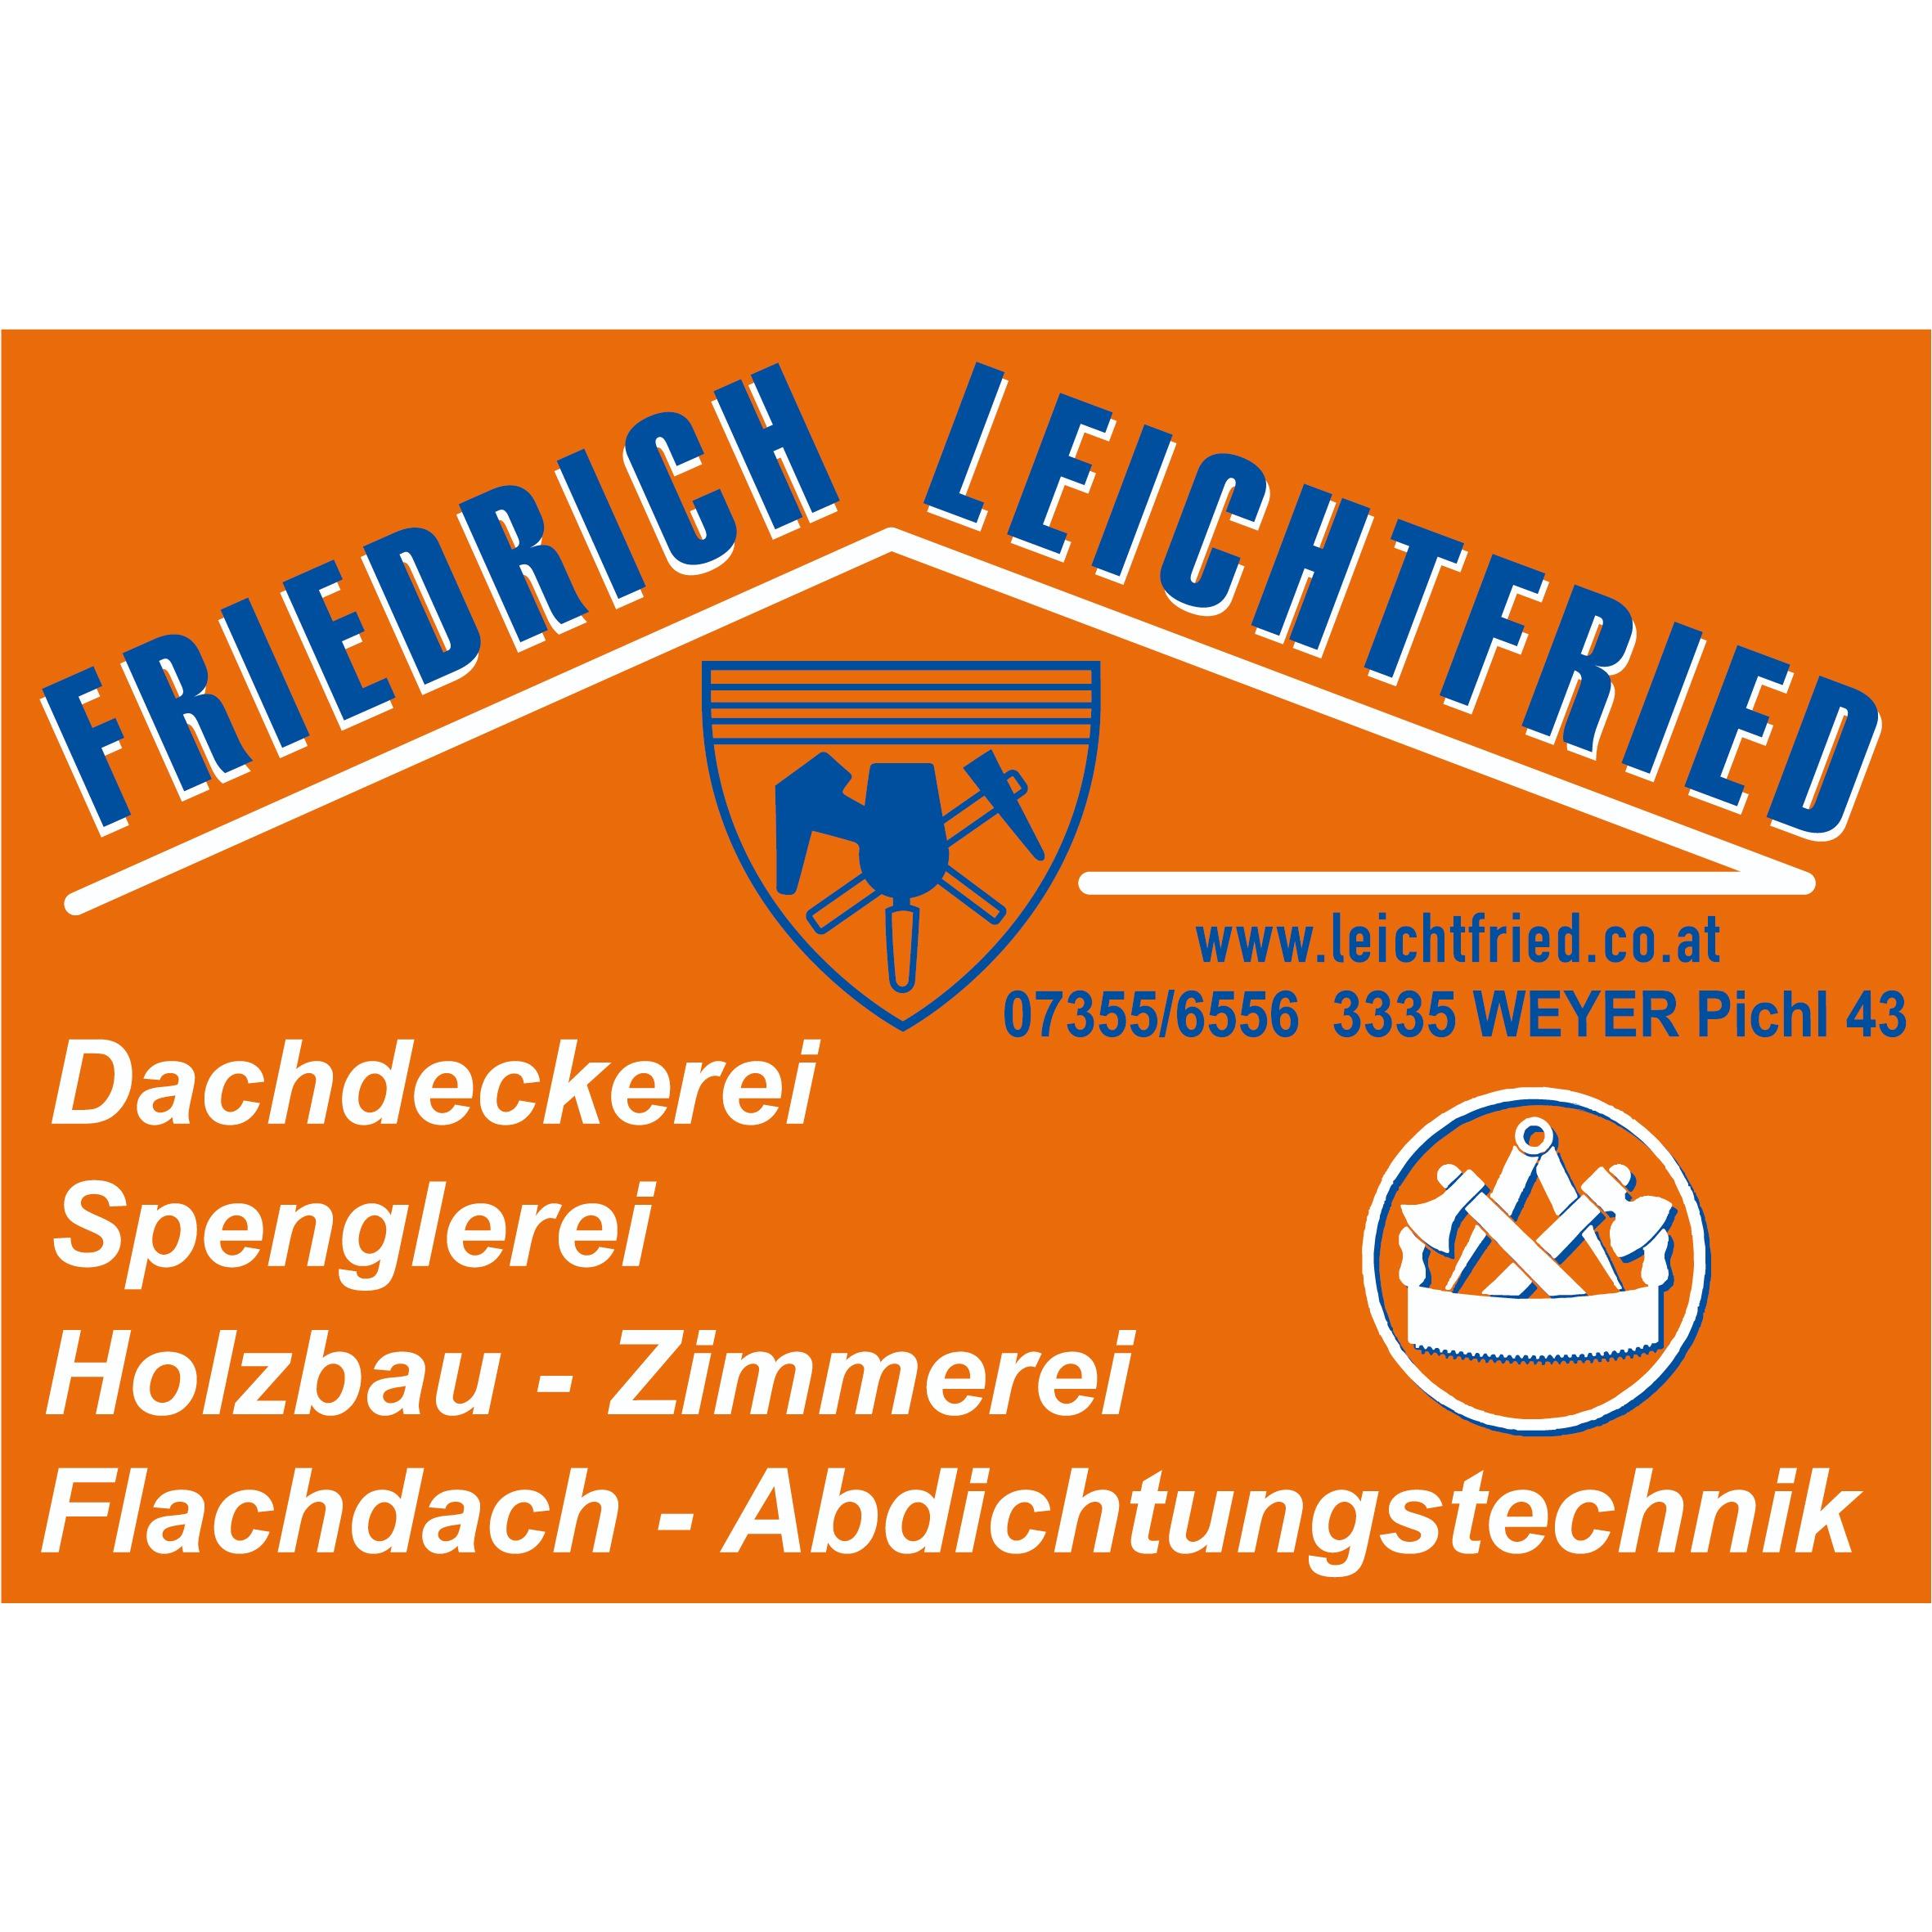 Leichtfried Friedrich GmbH & Co KG